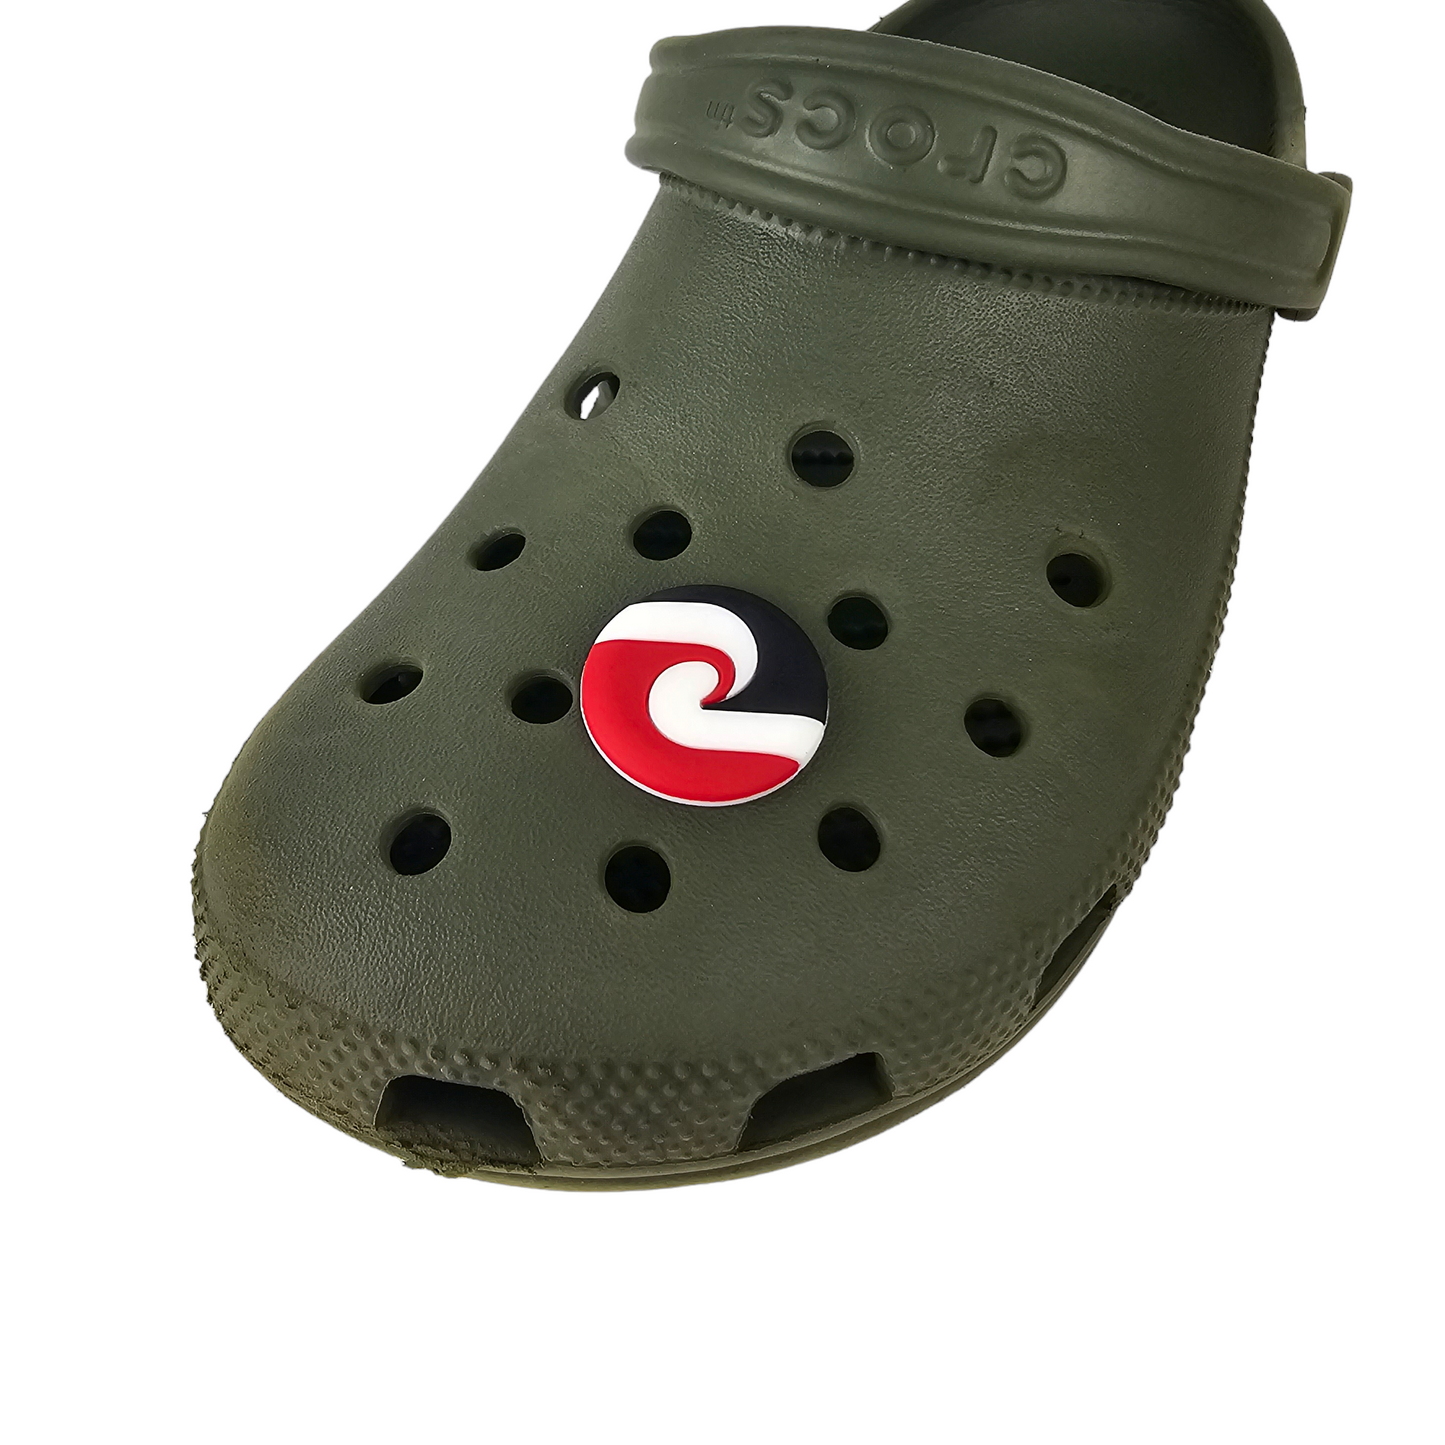 Crocs Jibbitz